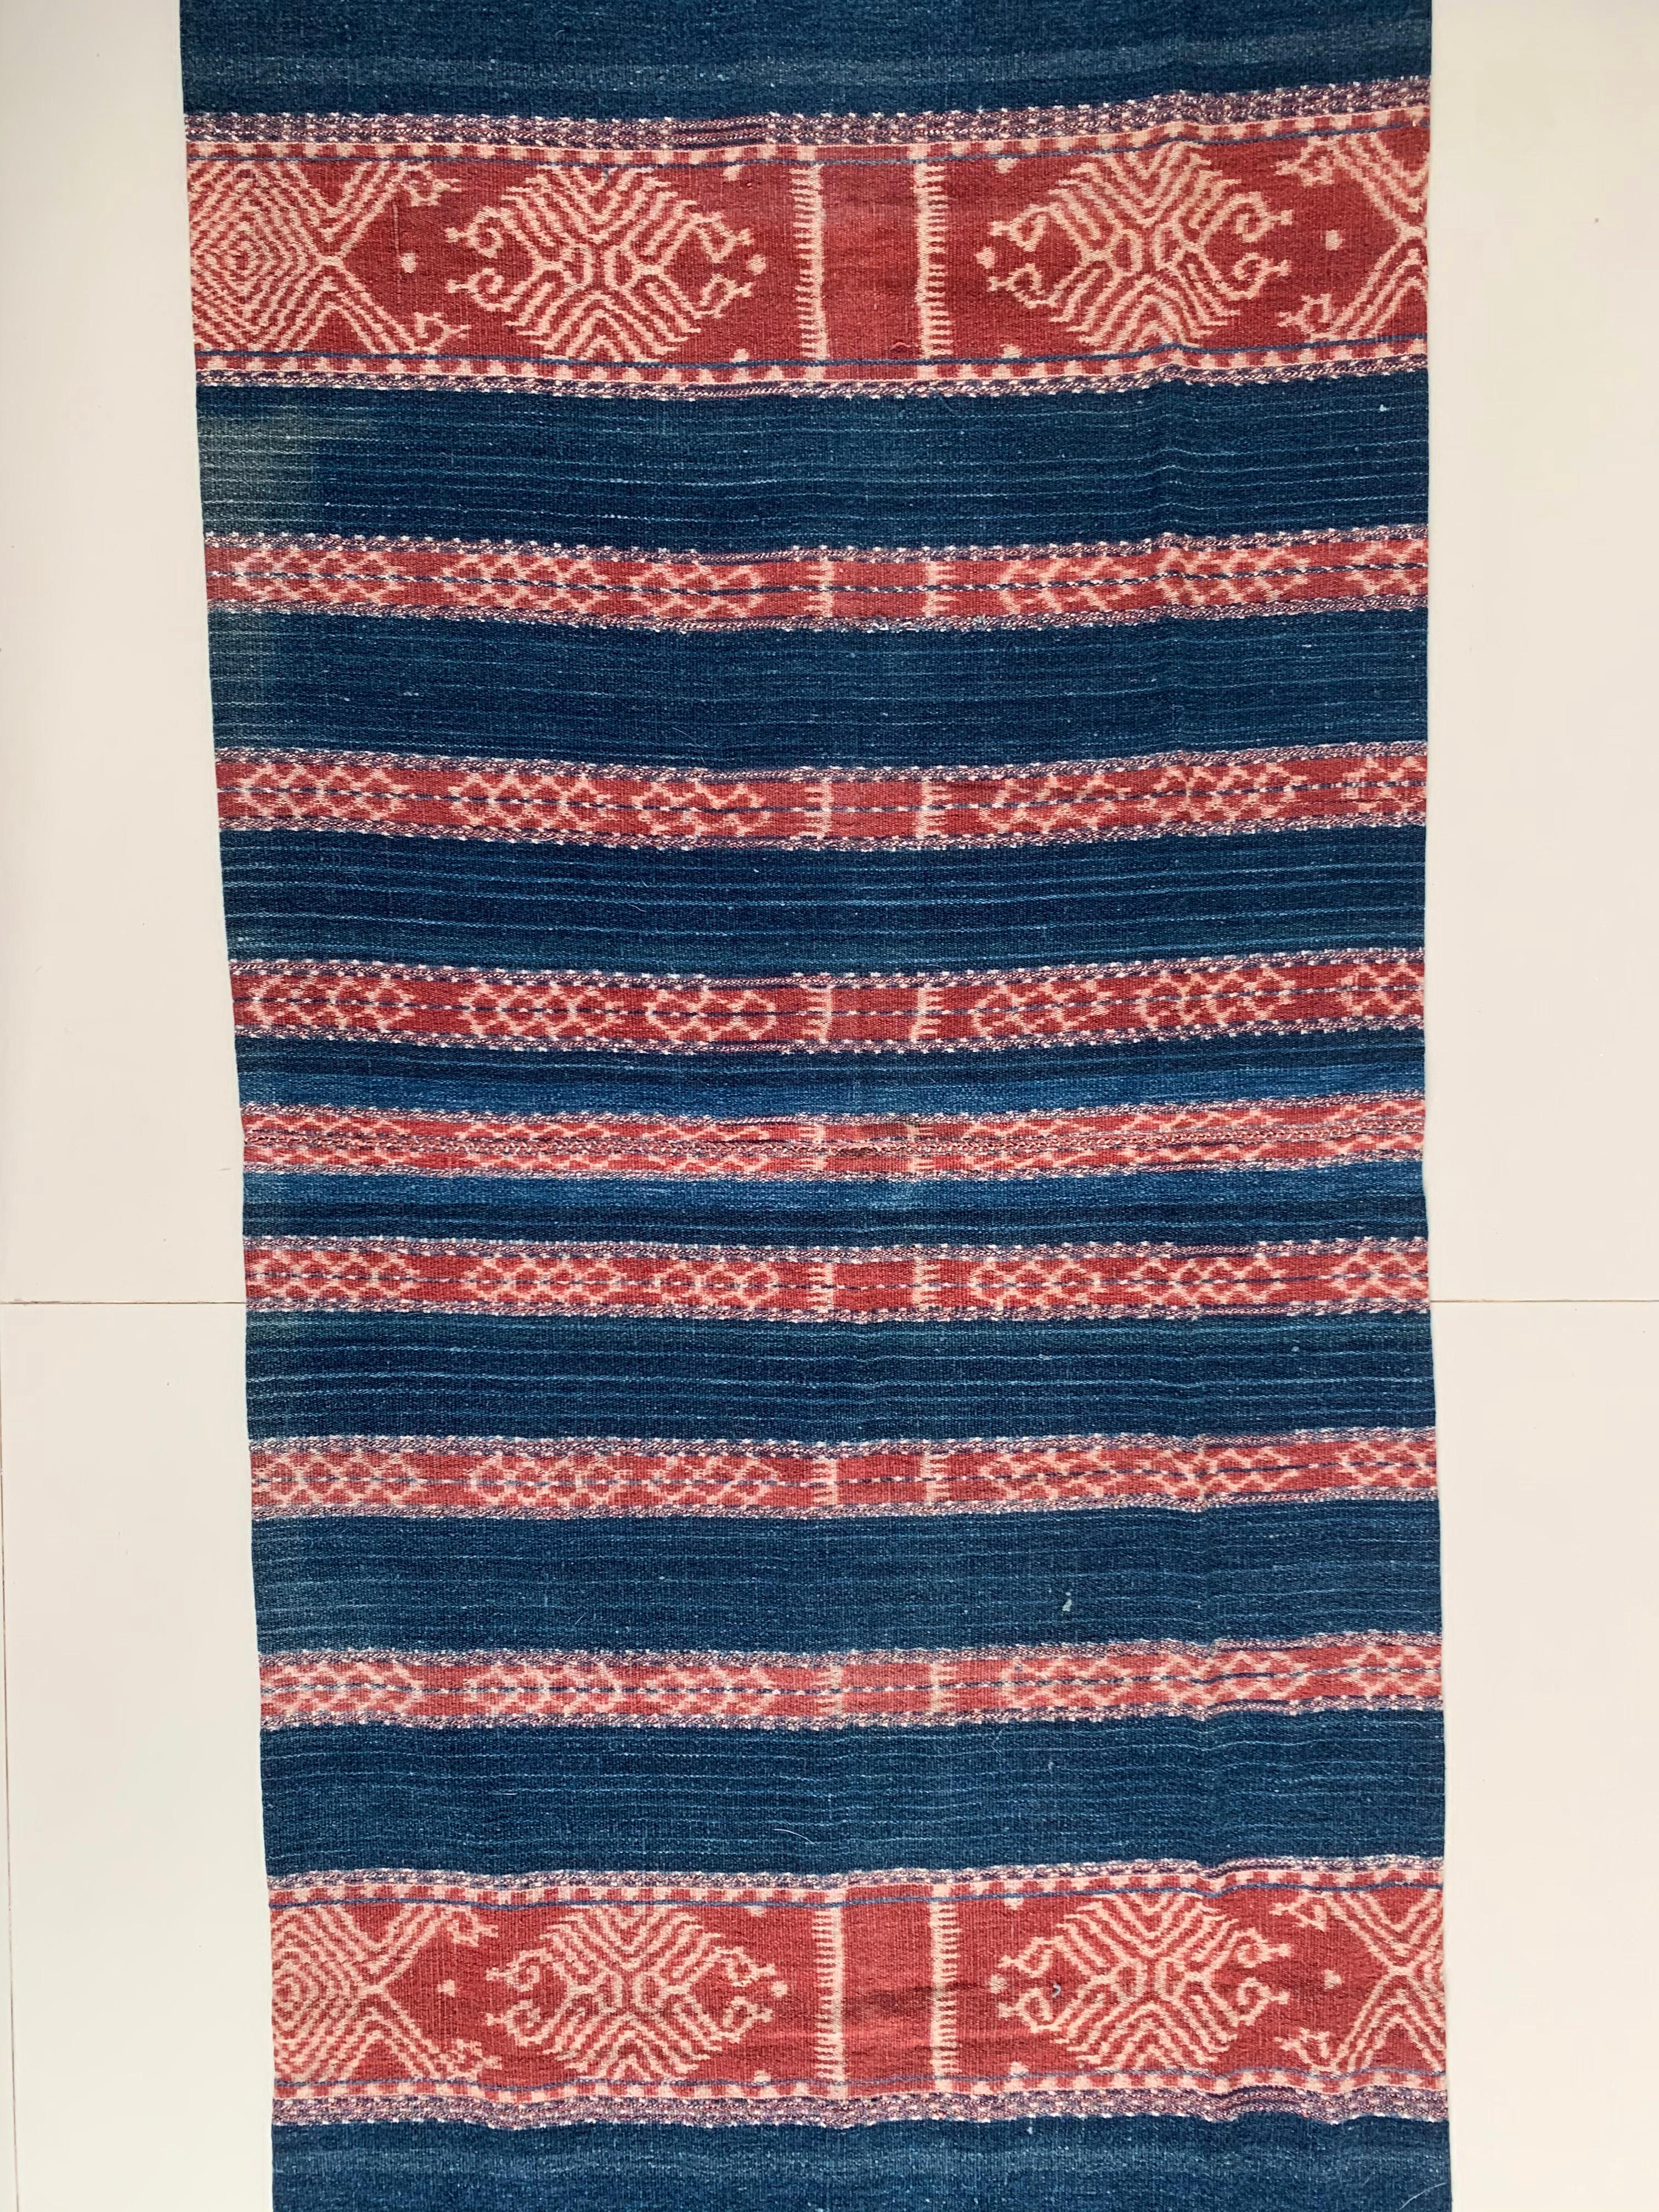 Dieses Ikat-Textil stammt von der Insel Timor in Indonesien. Es wird mit natürlich gefärbten Garnen nach einer seit Generationen überlieferten Methode handgewebt. Der blaue Vordergrund bringt die vielen farbigen Details und die ausgeprägten